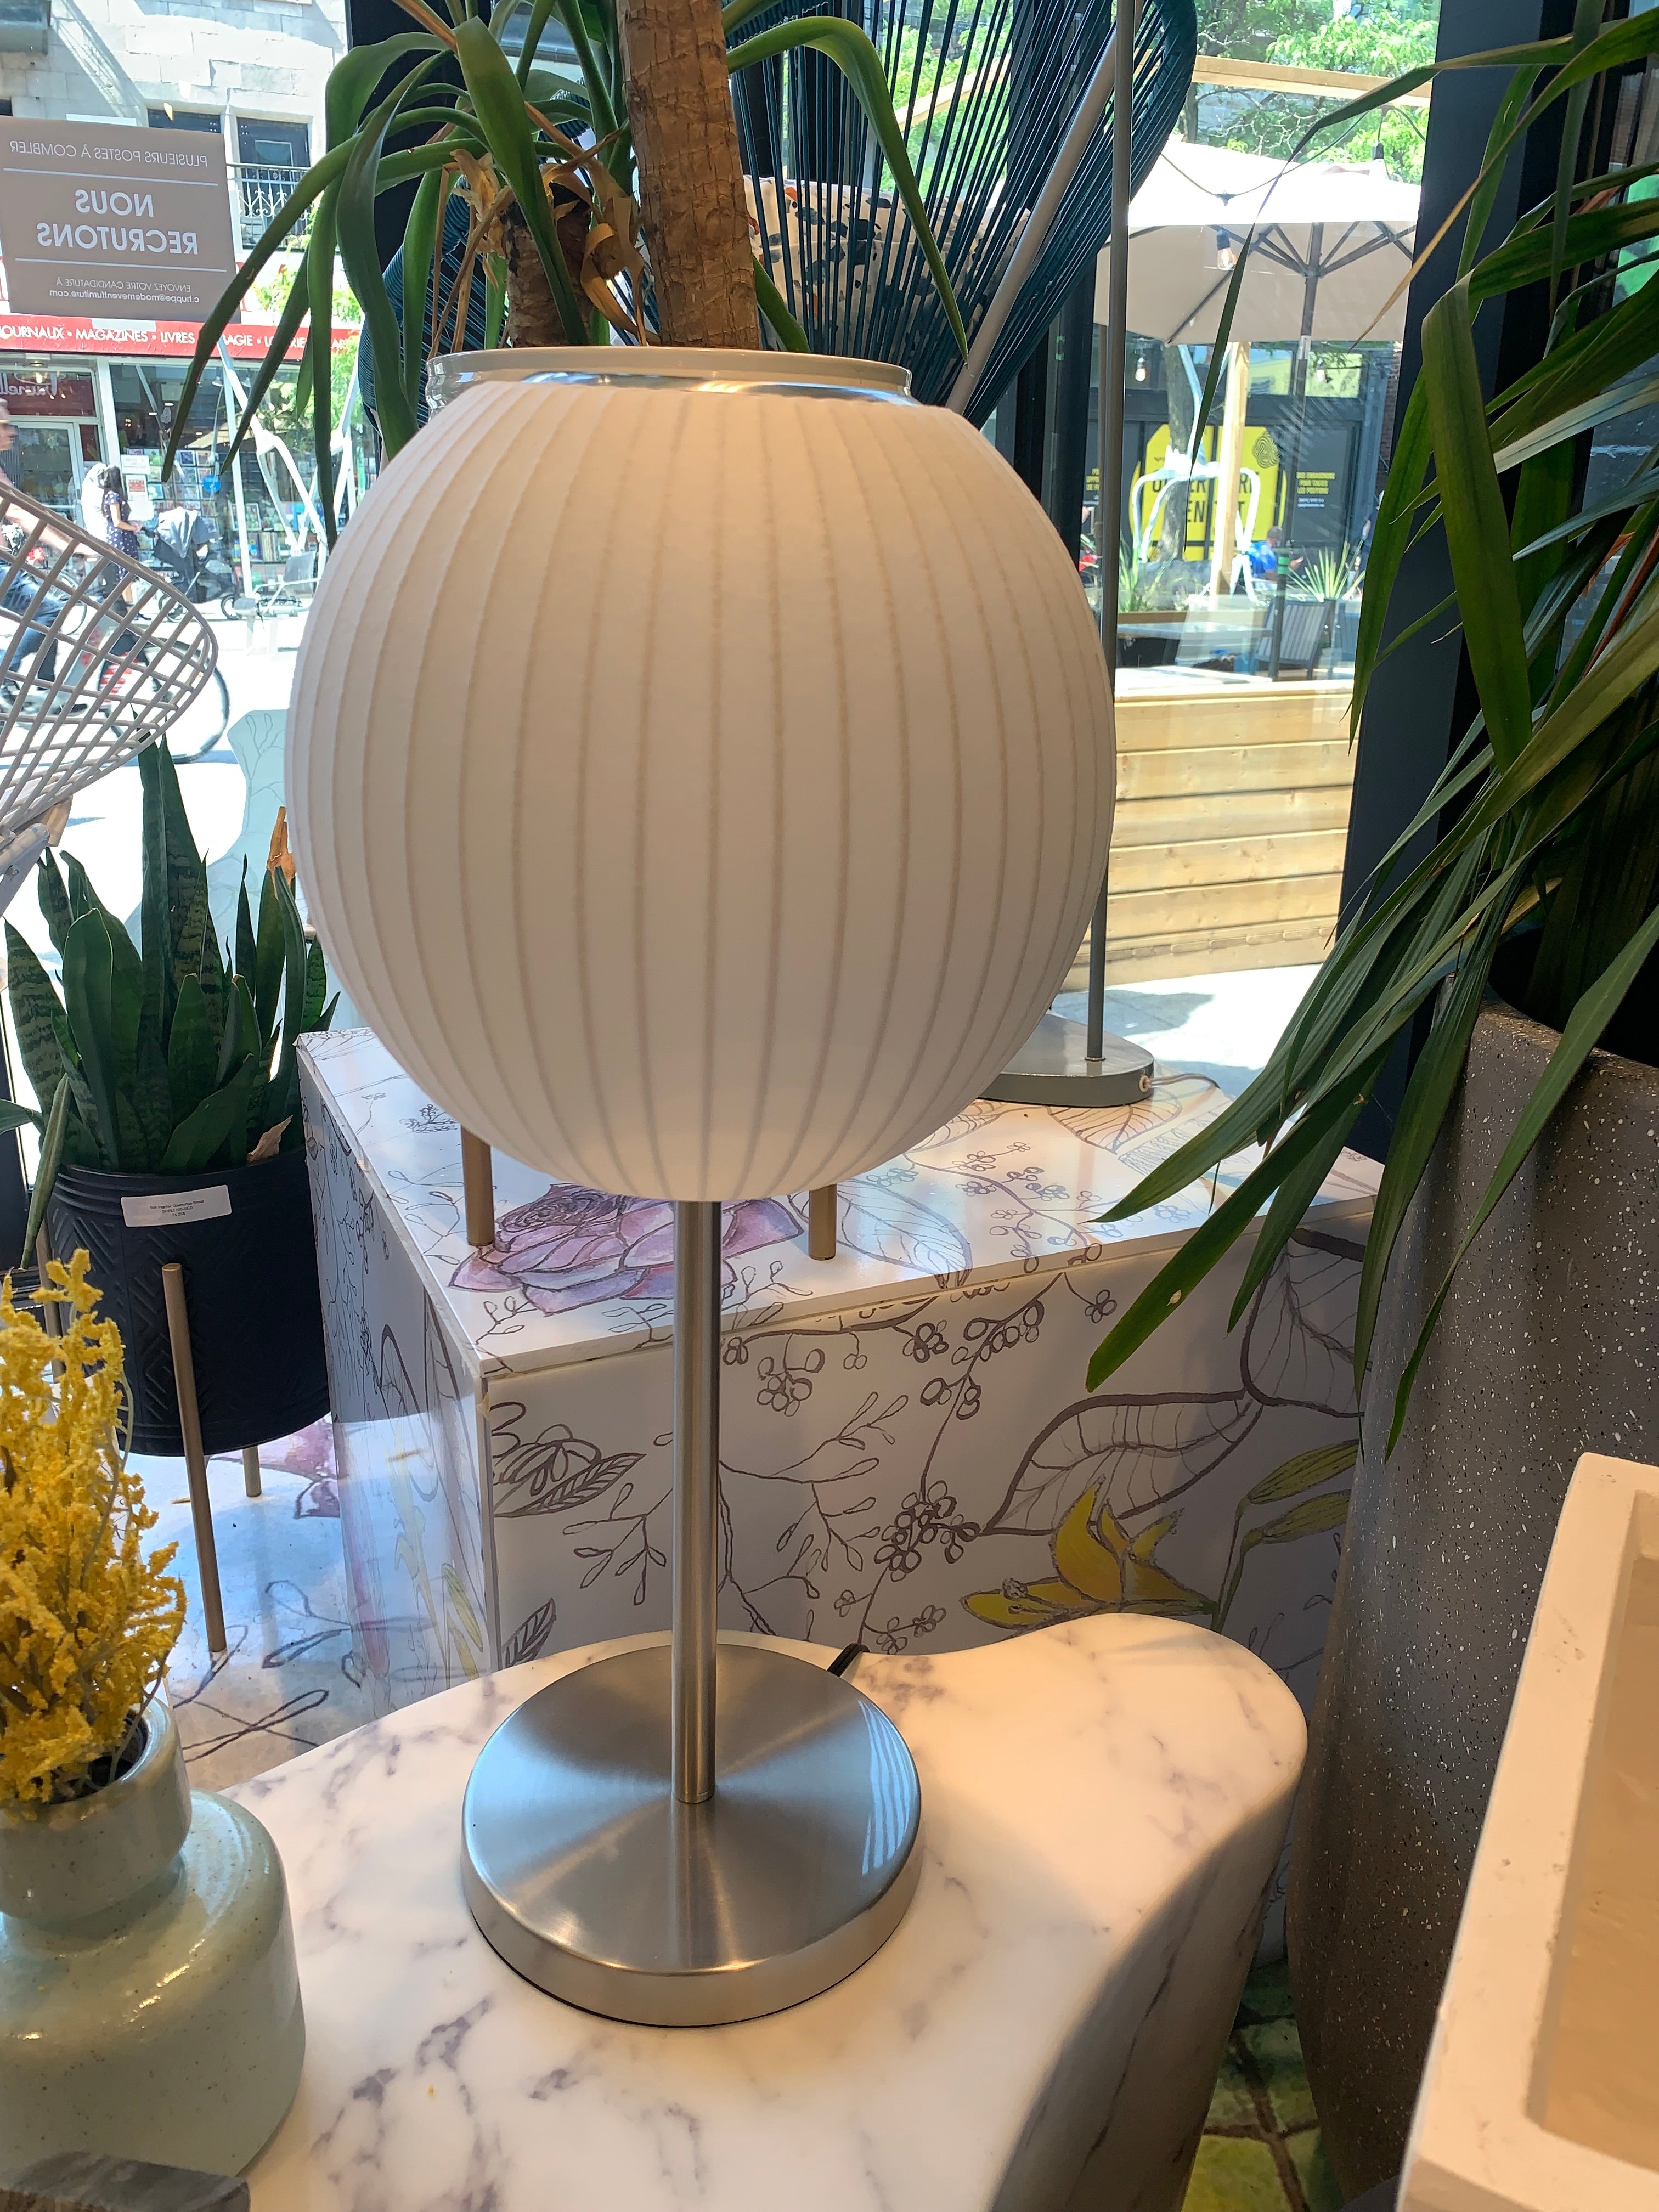 Bubble Ball Table Lamp